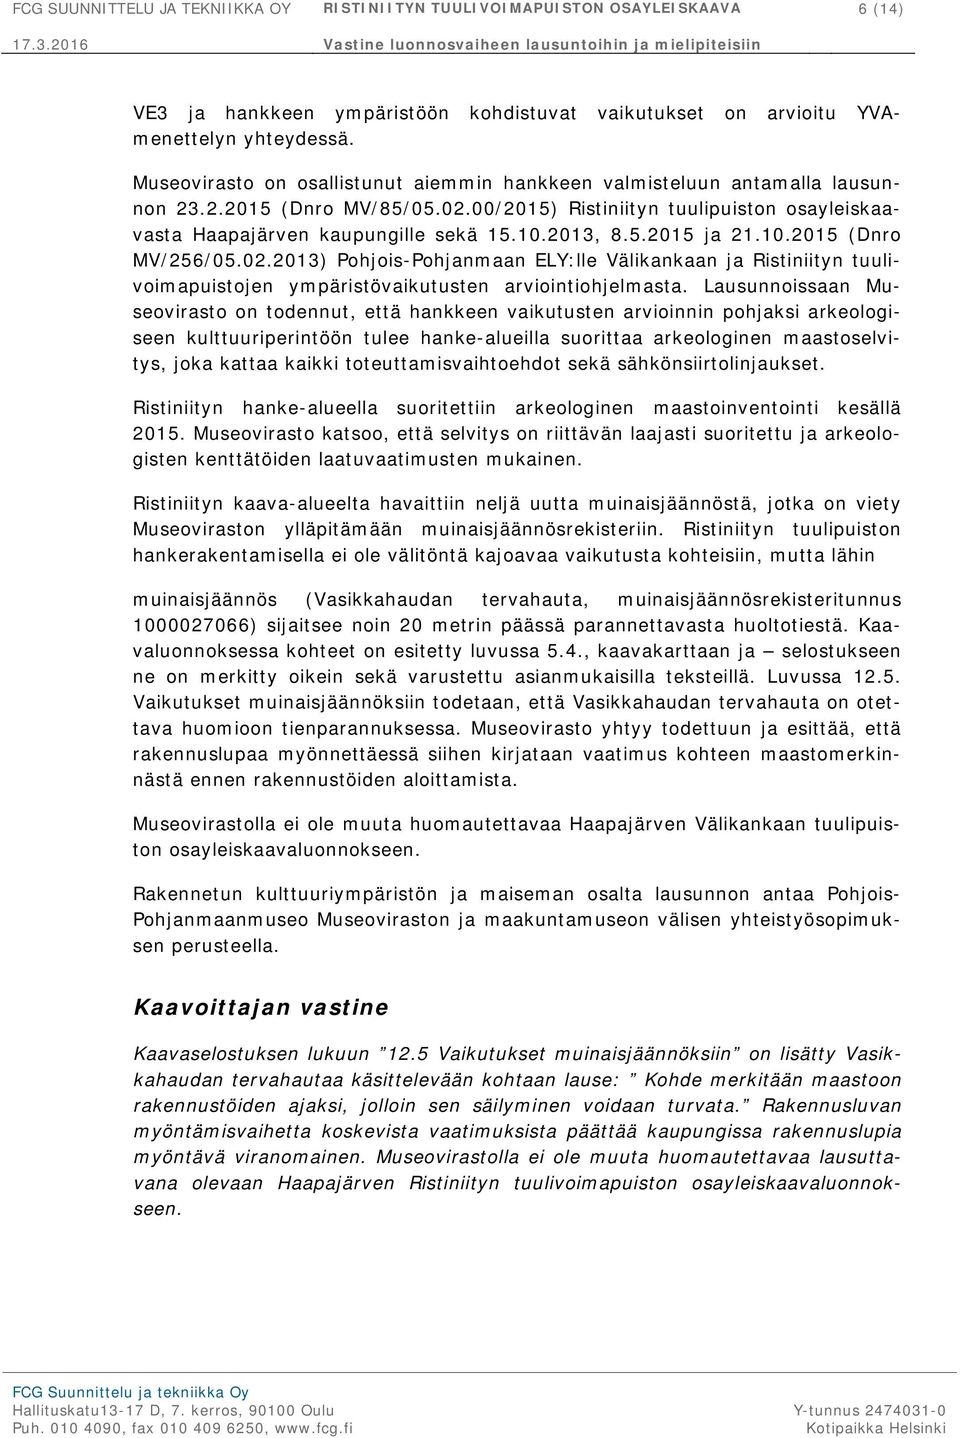 2013, 8.5.2015 ja 21.10.2015 (Dnro MV/256/05.02.2013) Pohjois-Pohjanmaan ELY:lle Välikankaan ja Ristiniityn tuulivoimapuistojen ympäristövaikutusten arviointiohjelmasta.